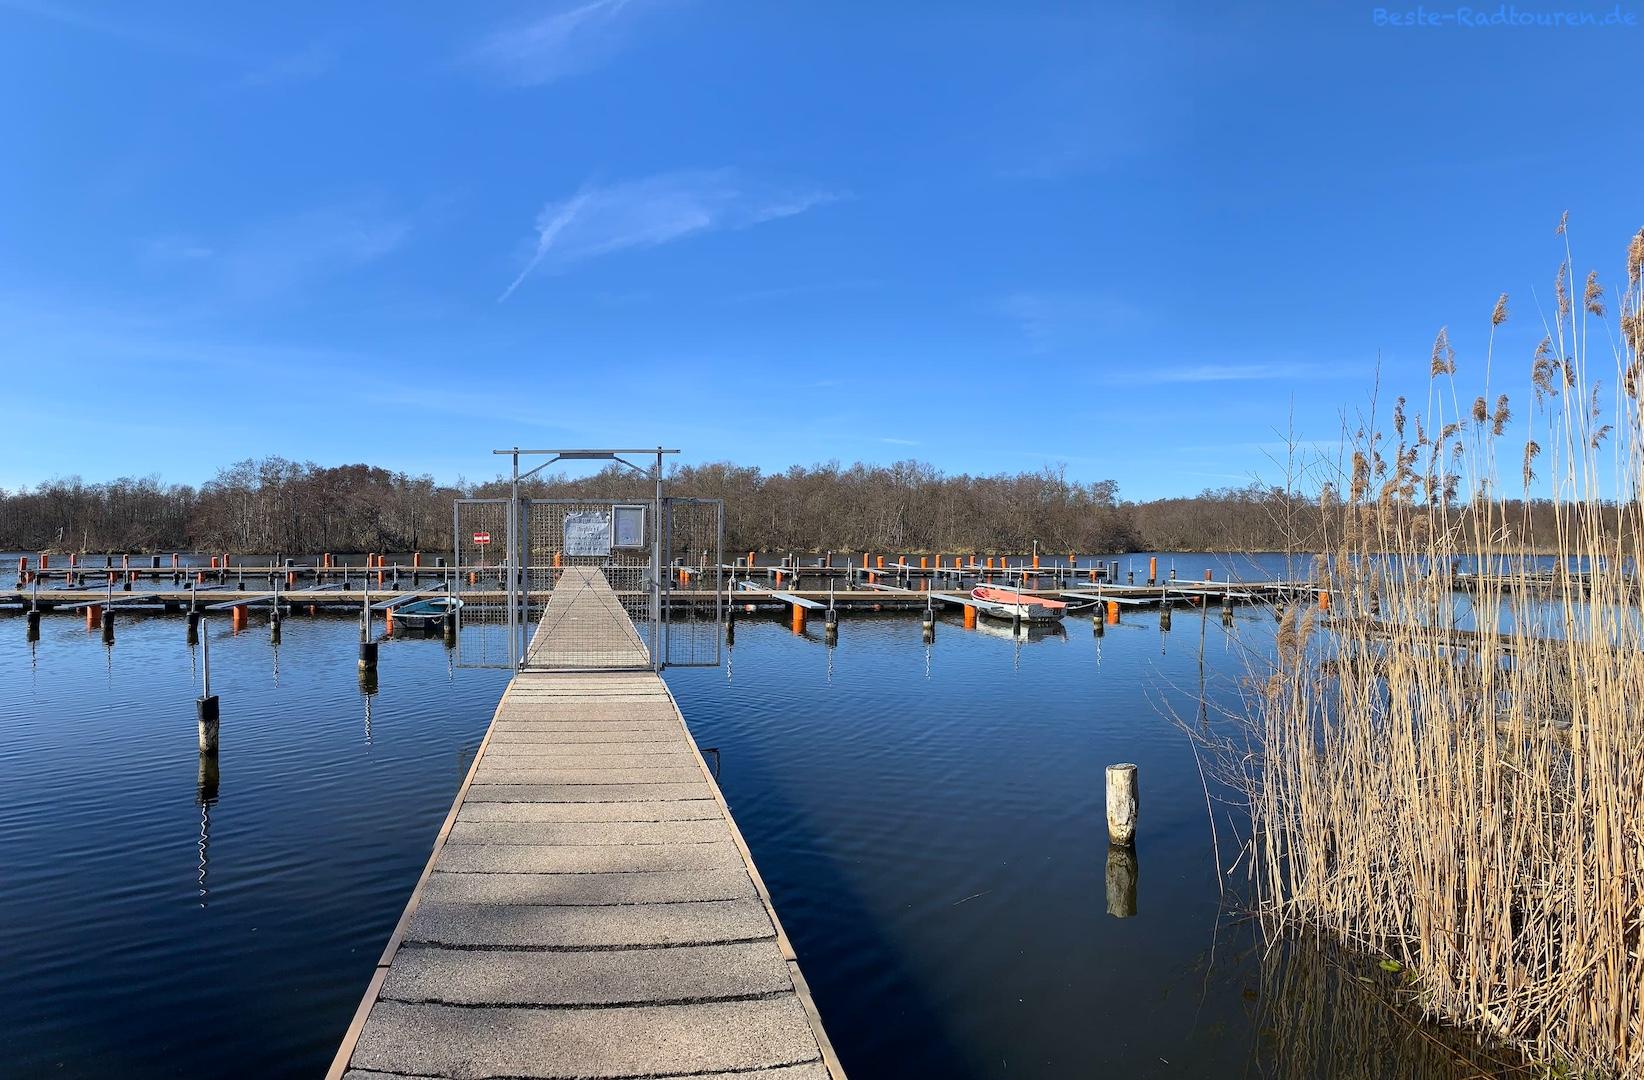 Bild vom Uferweg aus: Seddinsee in Gosen, Bootssteg